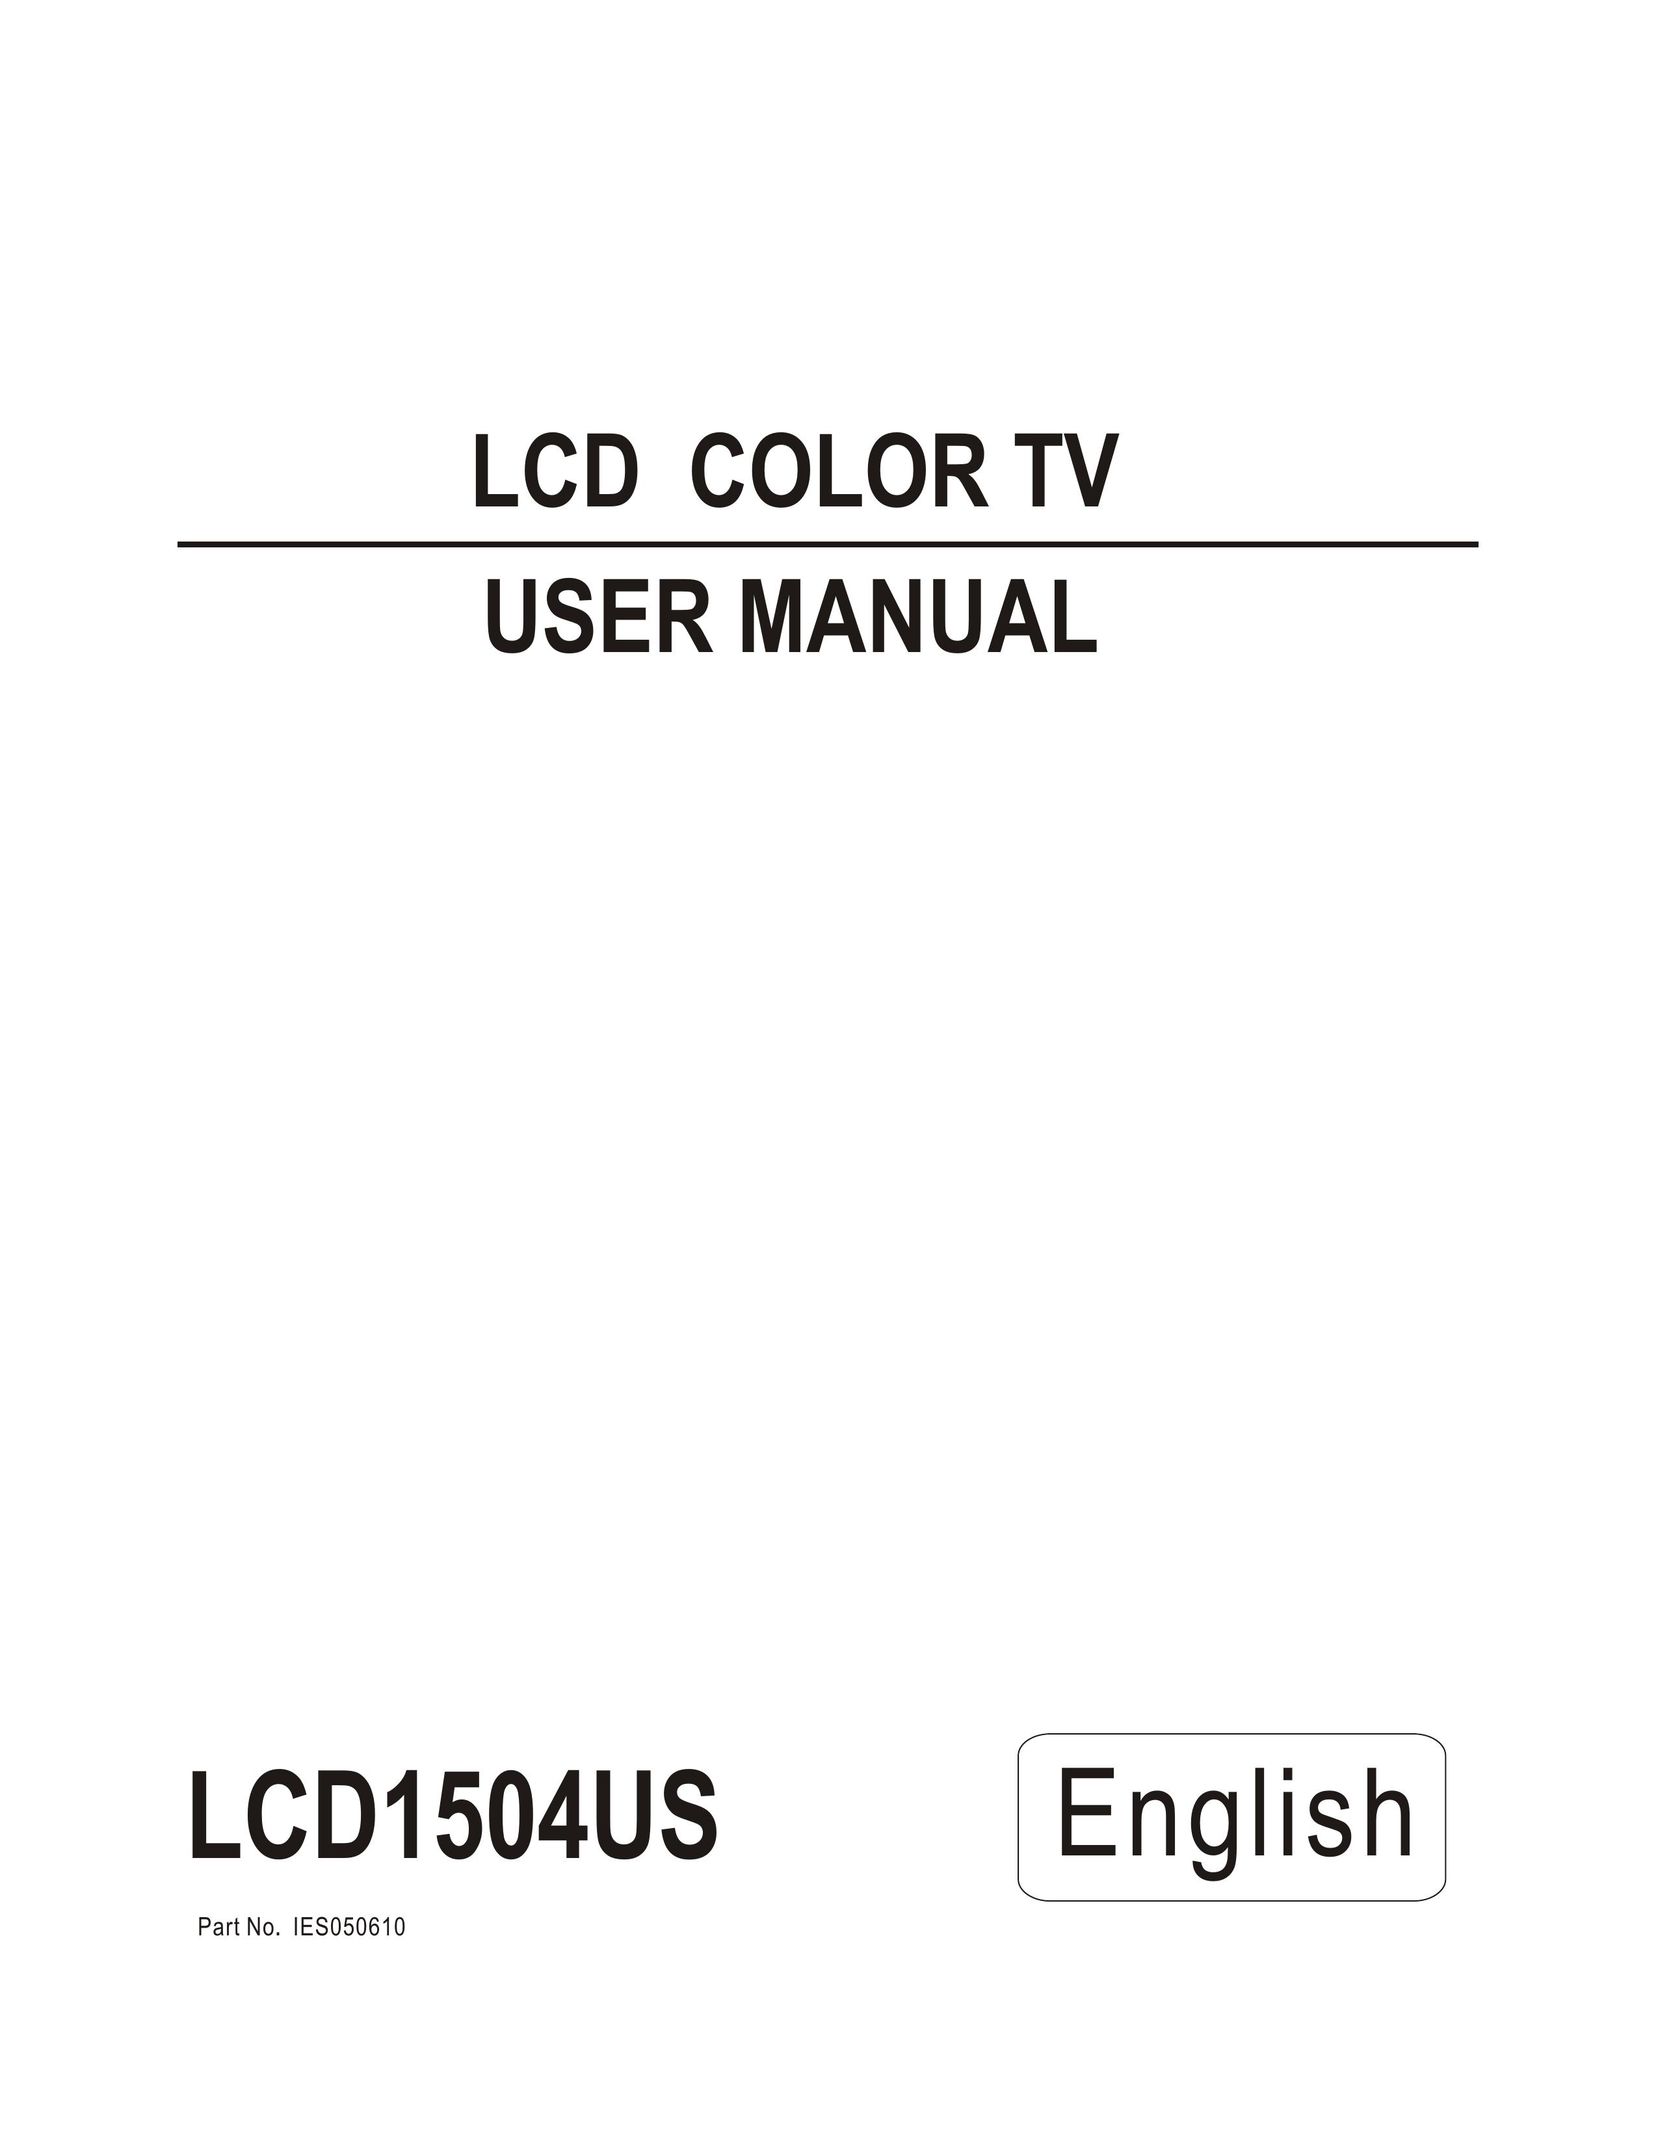 Hisense Group LCD1504US Flat Panel Television User Manual